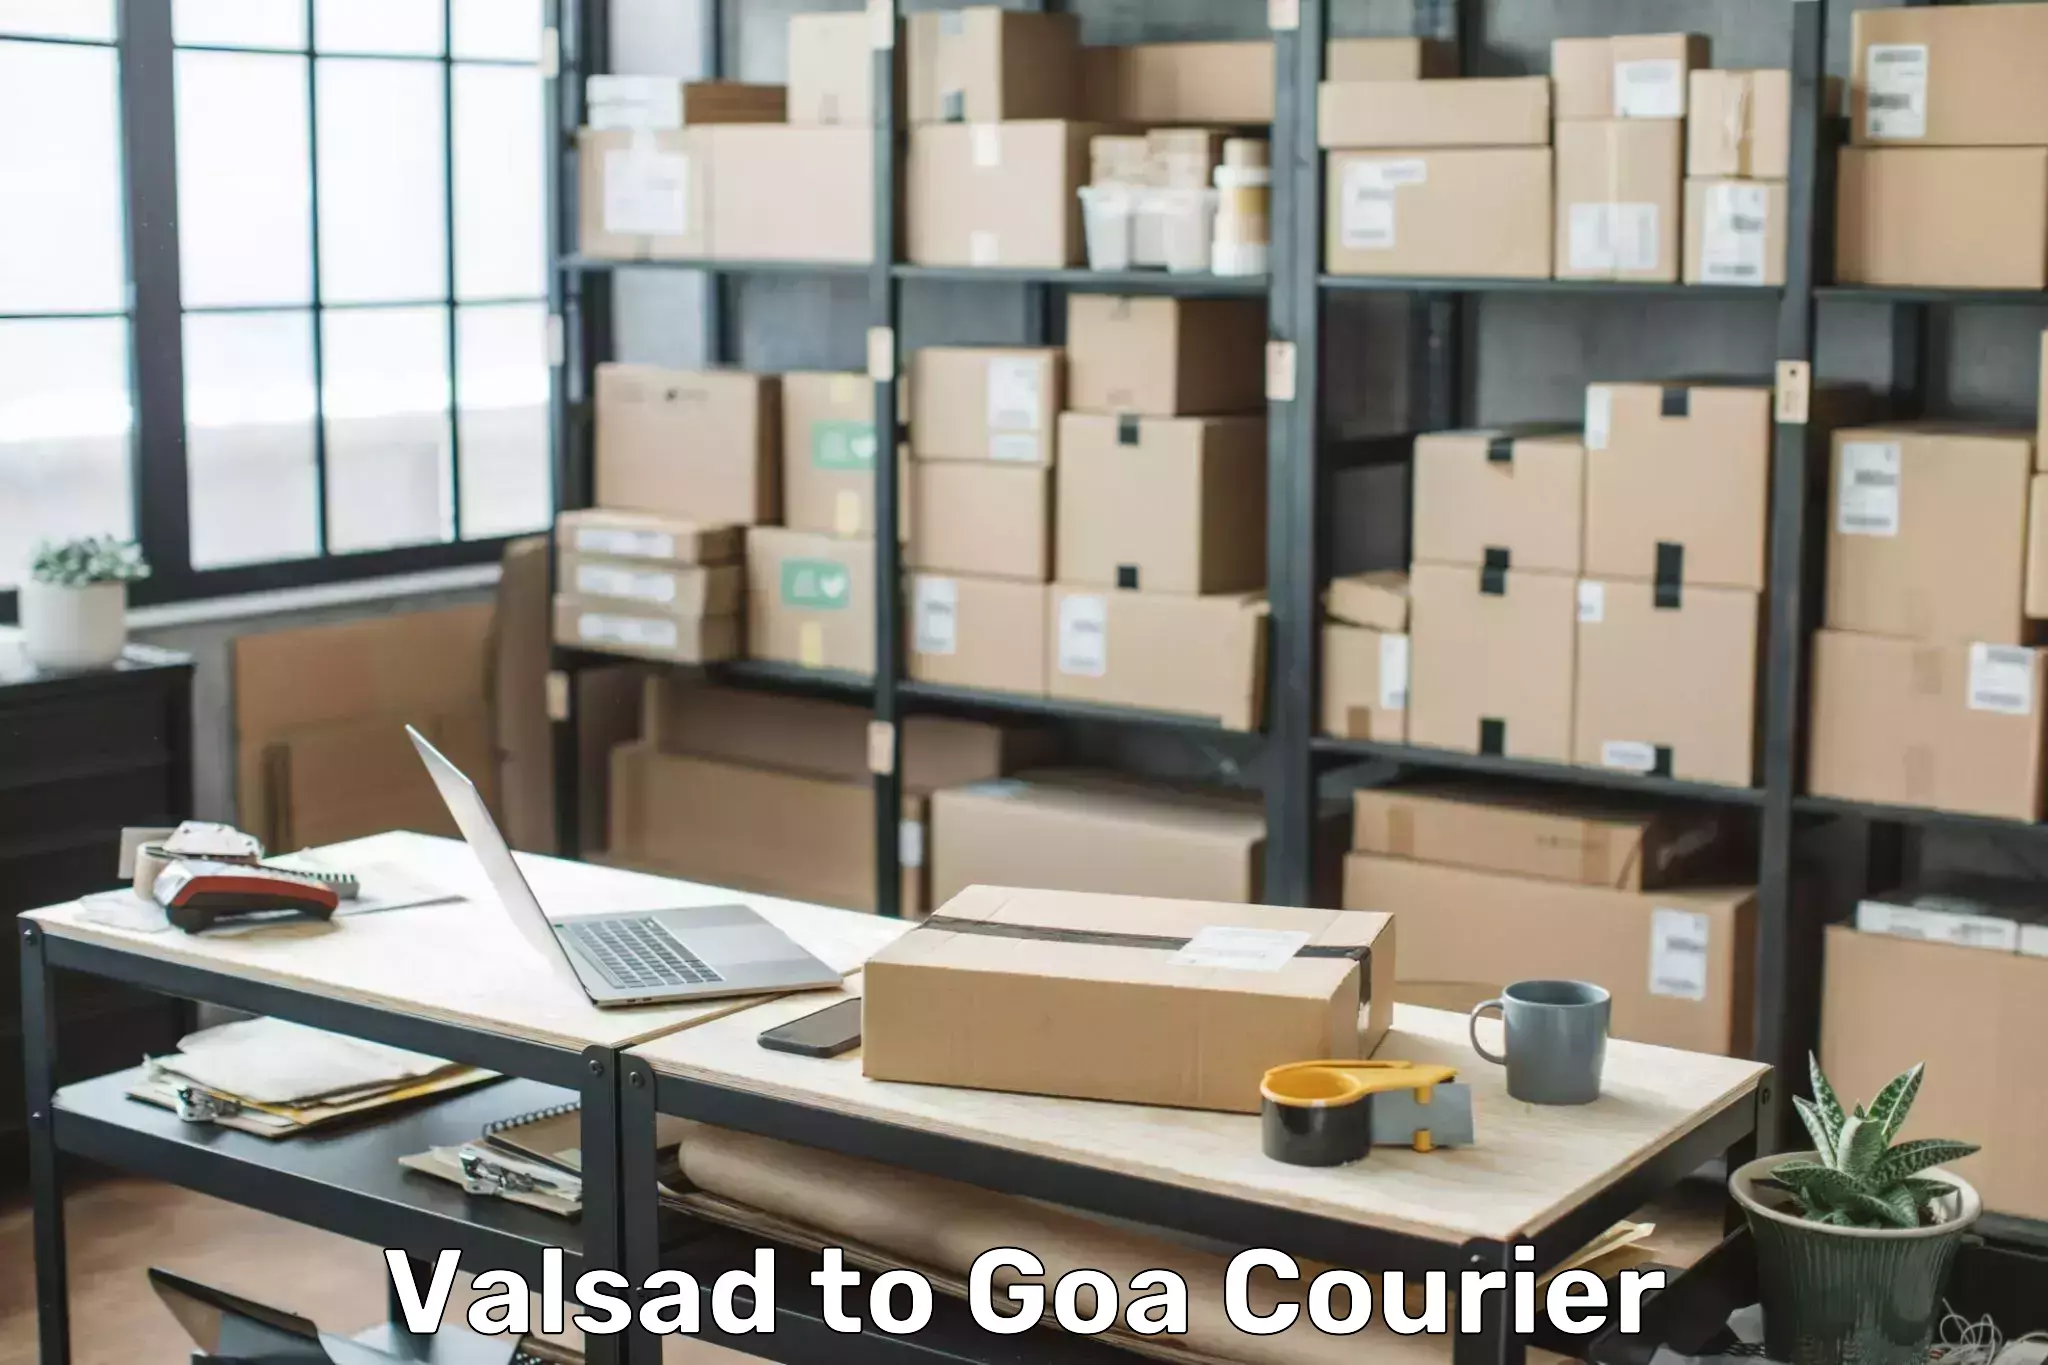 Door-to-door baggage service Valsad to South Goa